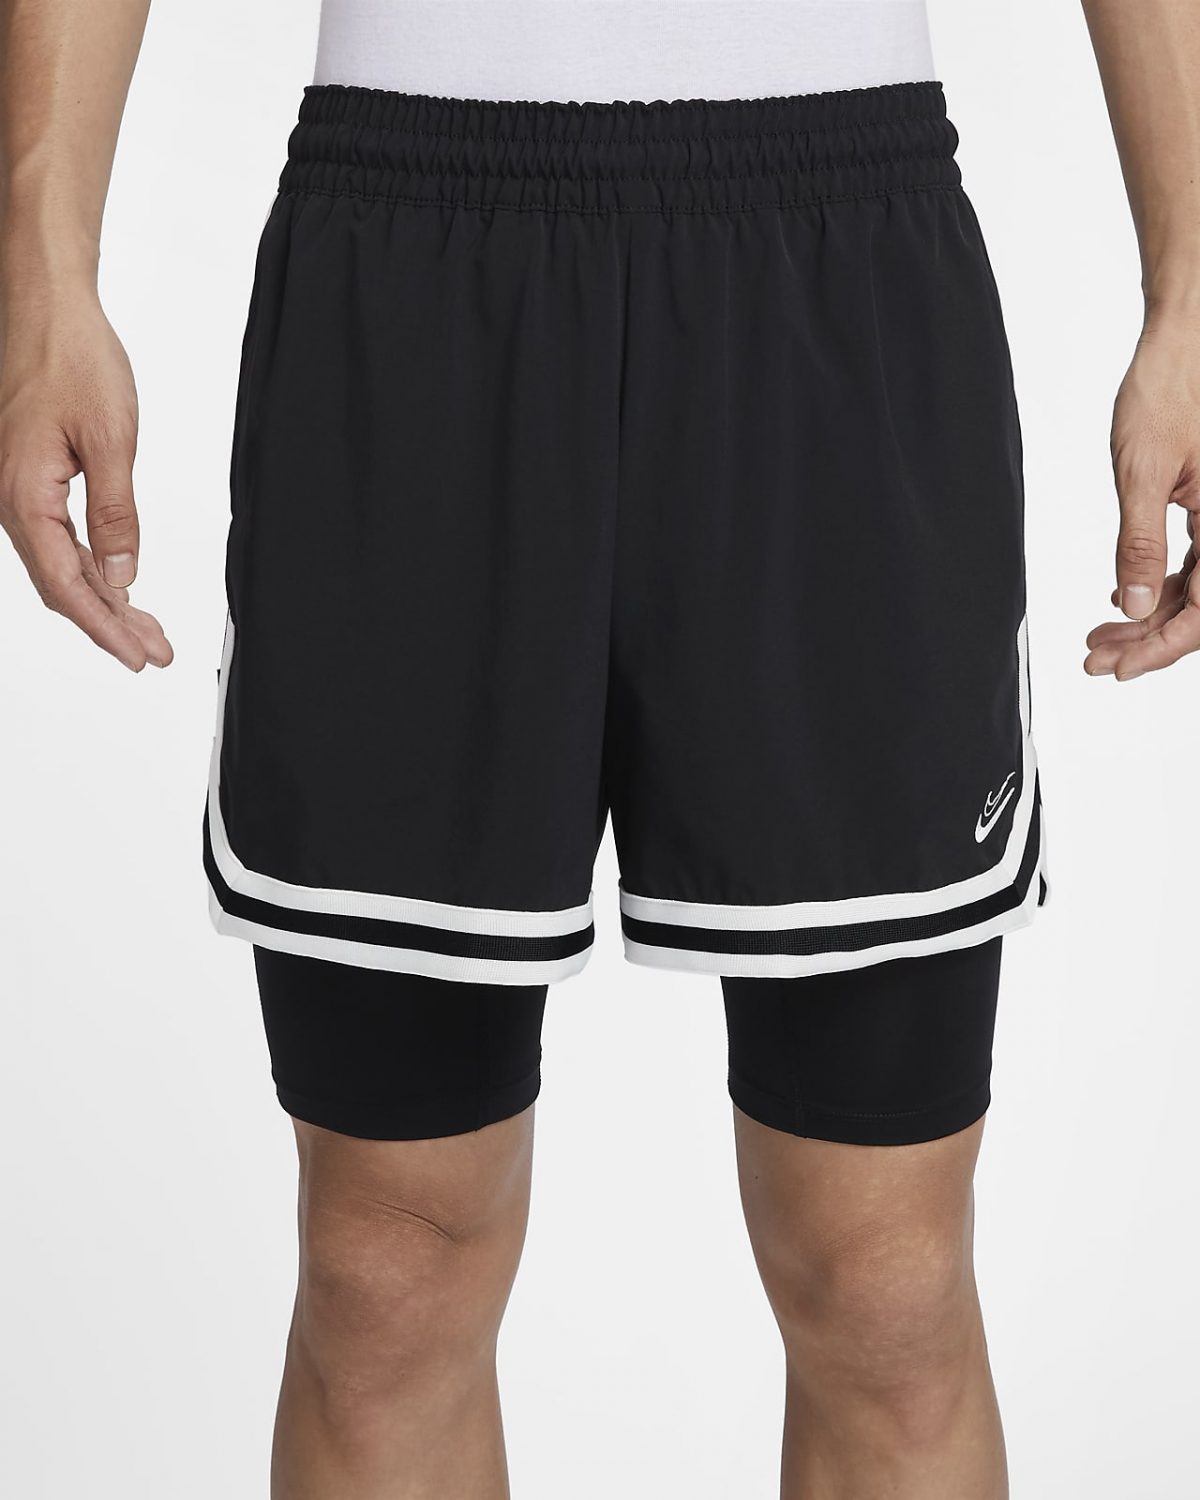 Мужские шорты nike Kevin Durant черные фотография